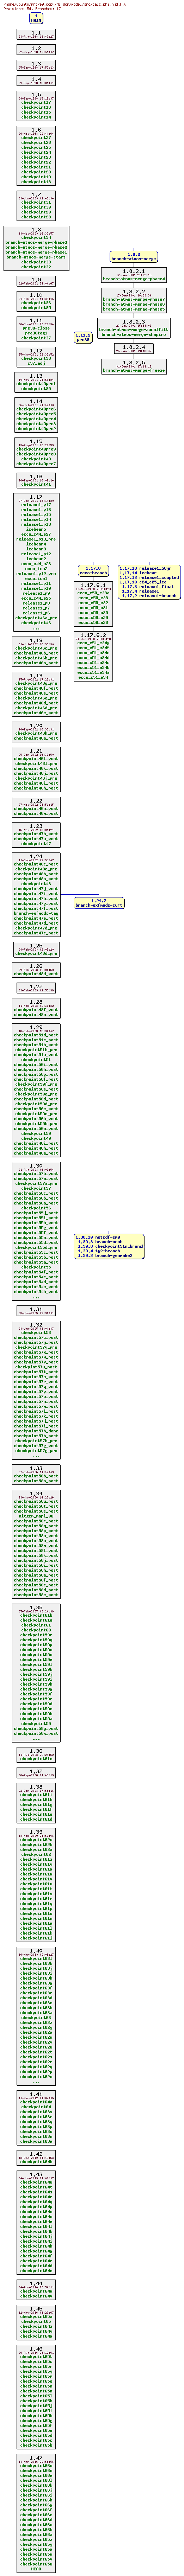 Revisions of MITgcm/model/src/calc_phi_hyd.F